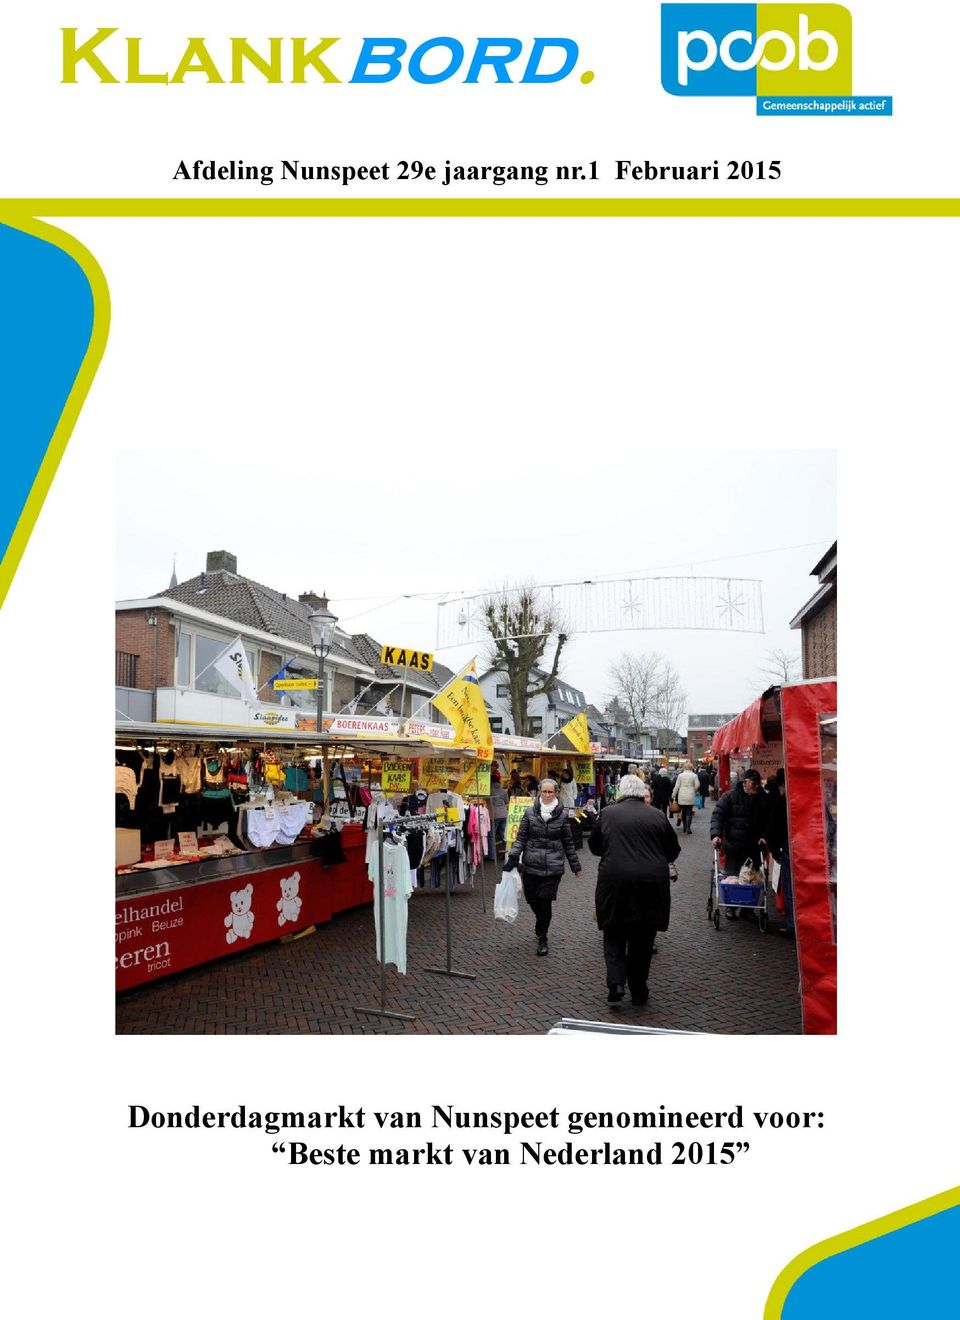 1 Februari 2015 Donderdagmarkt van Nunspeet genomineerd voor: